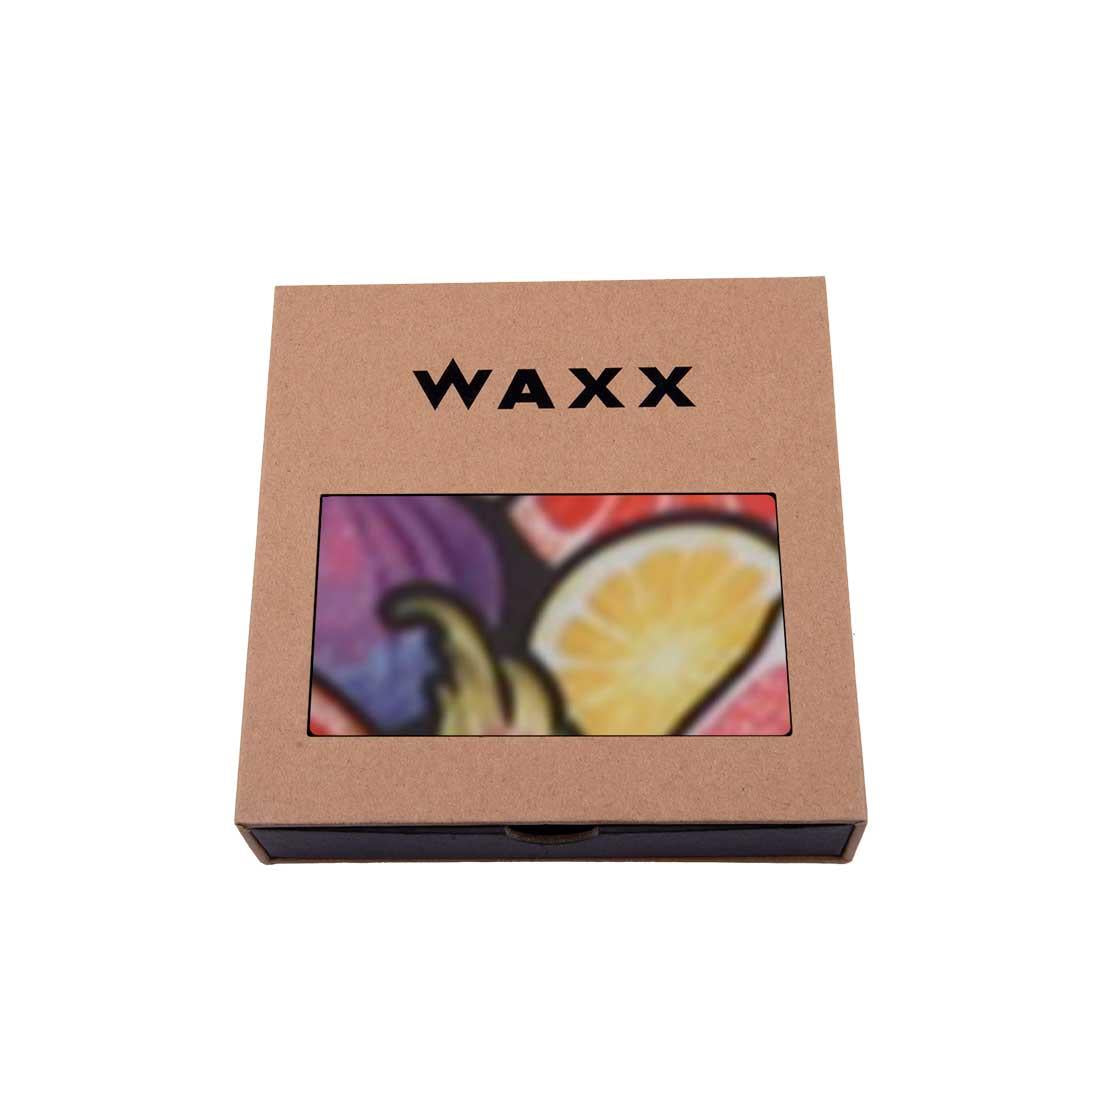 Waxx Womens Boy Short Exotic Fruits